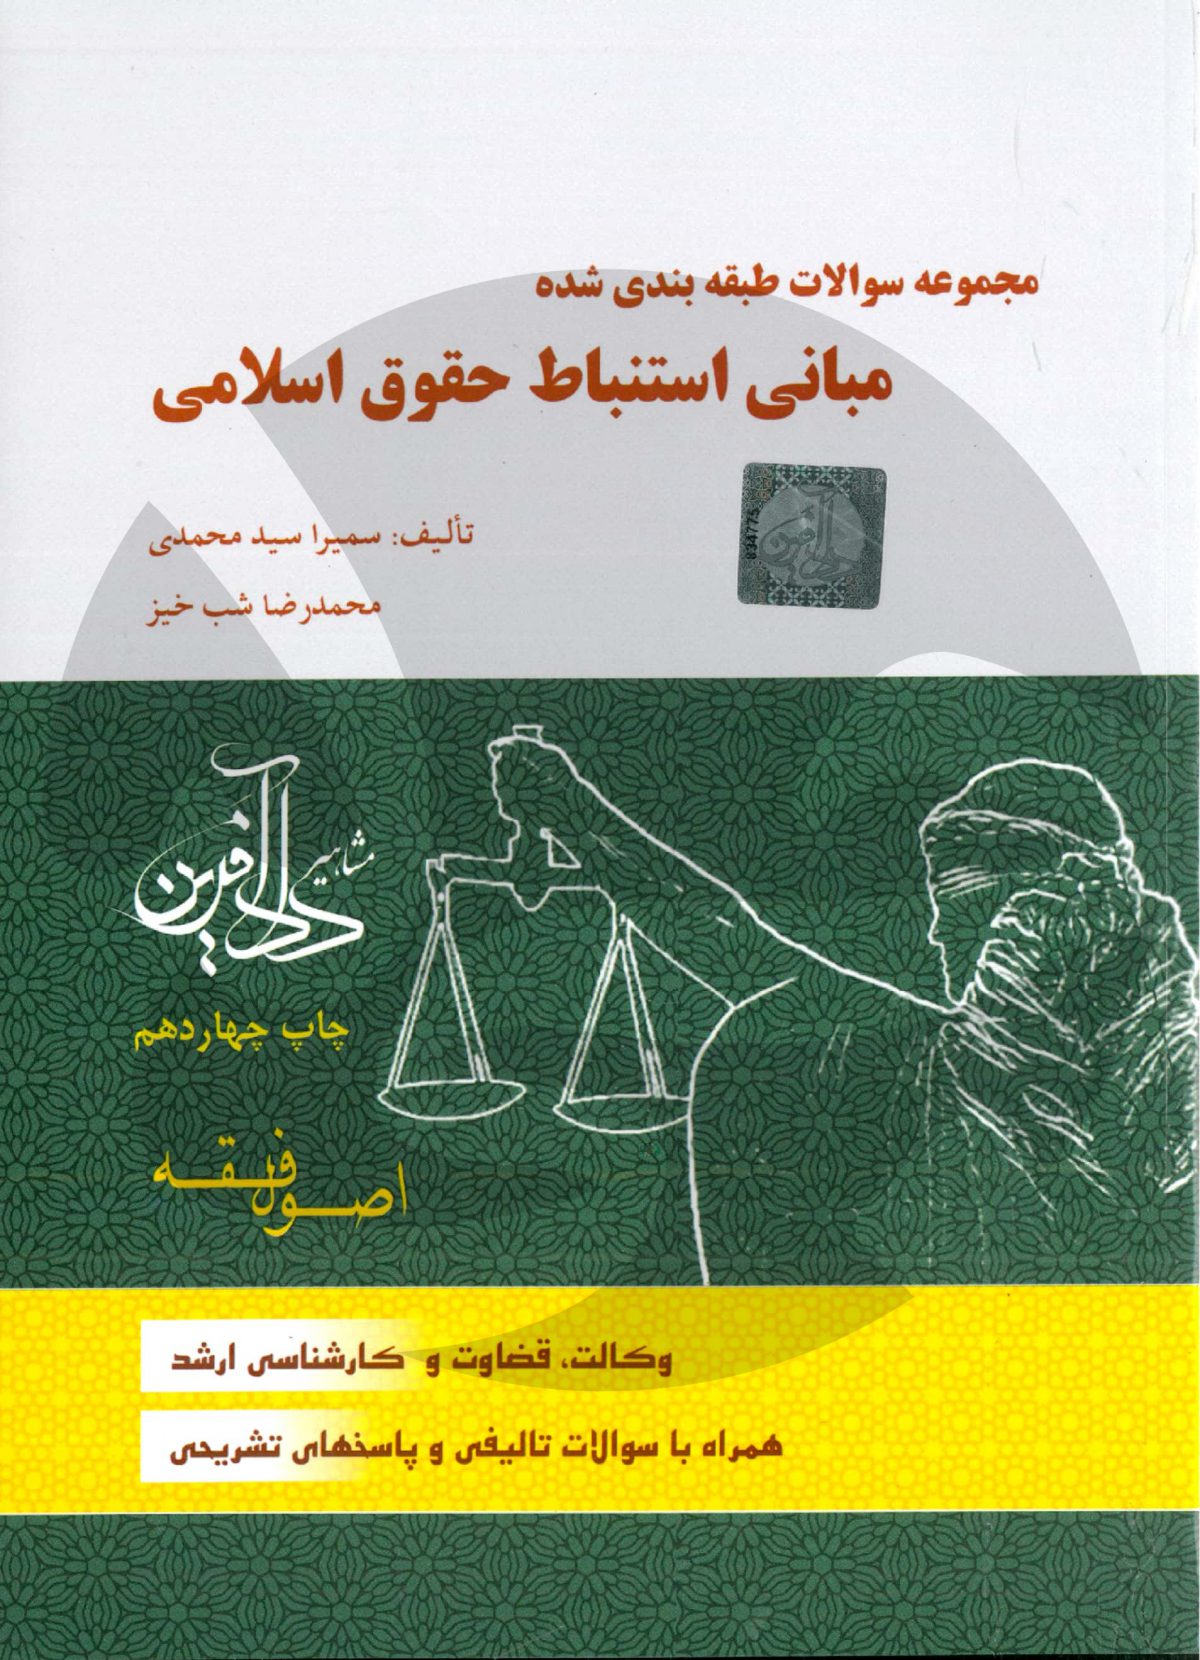 کتاب تست اصول فقه سمیرا محمدی و محمدرضا شبخیز - انتشارات جی5